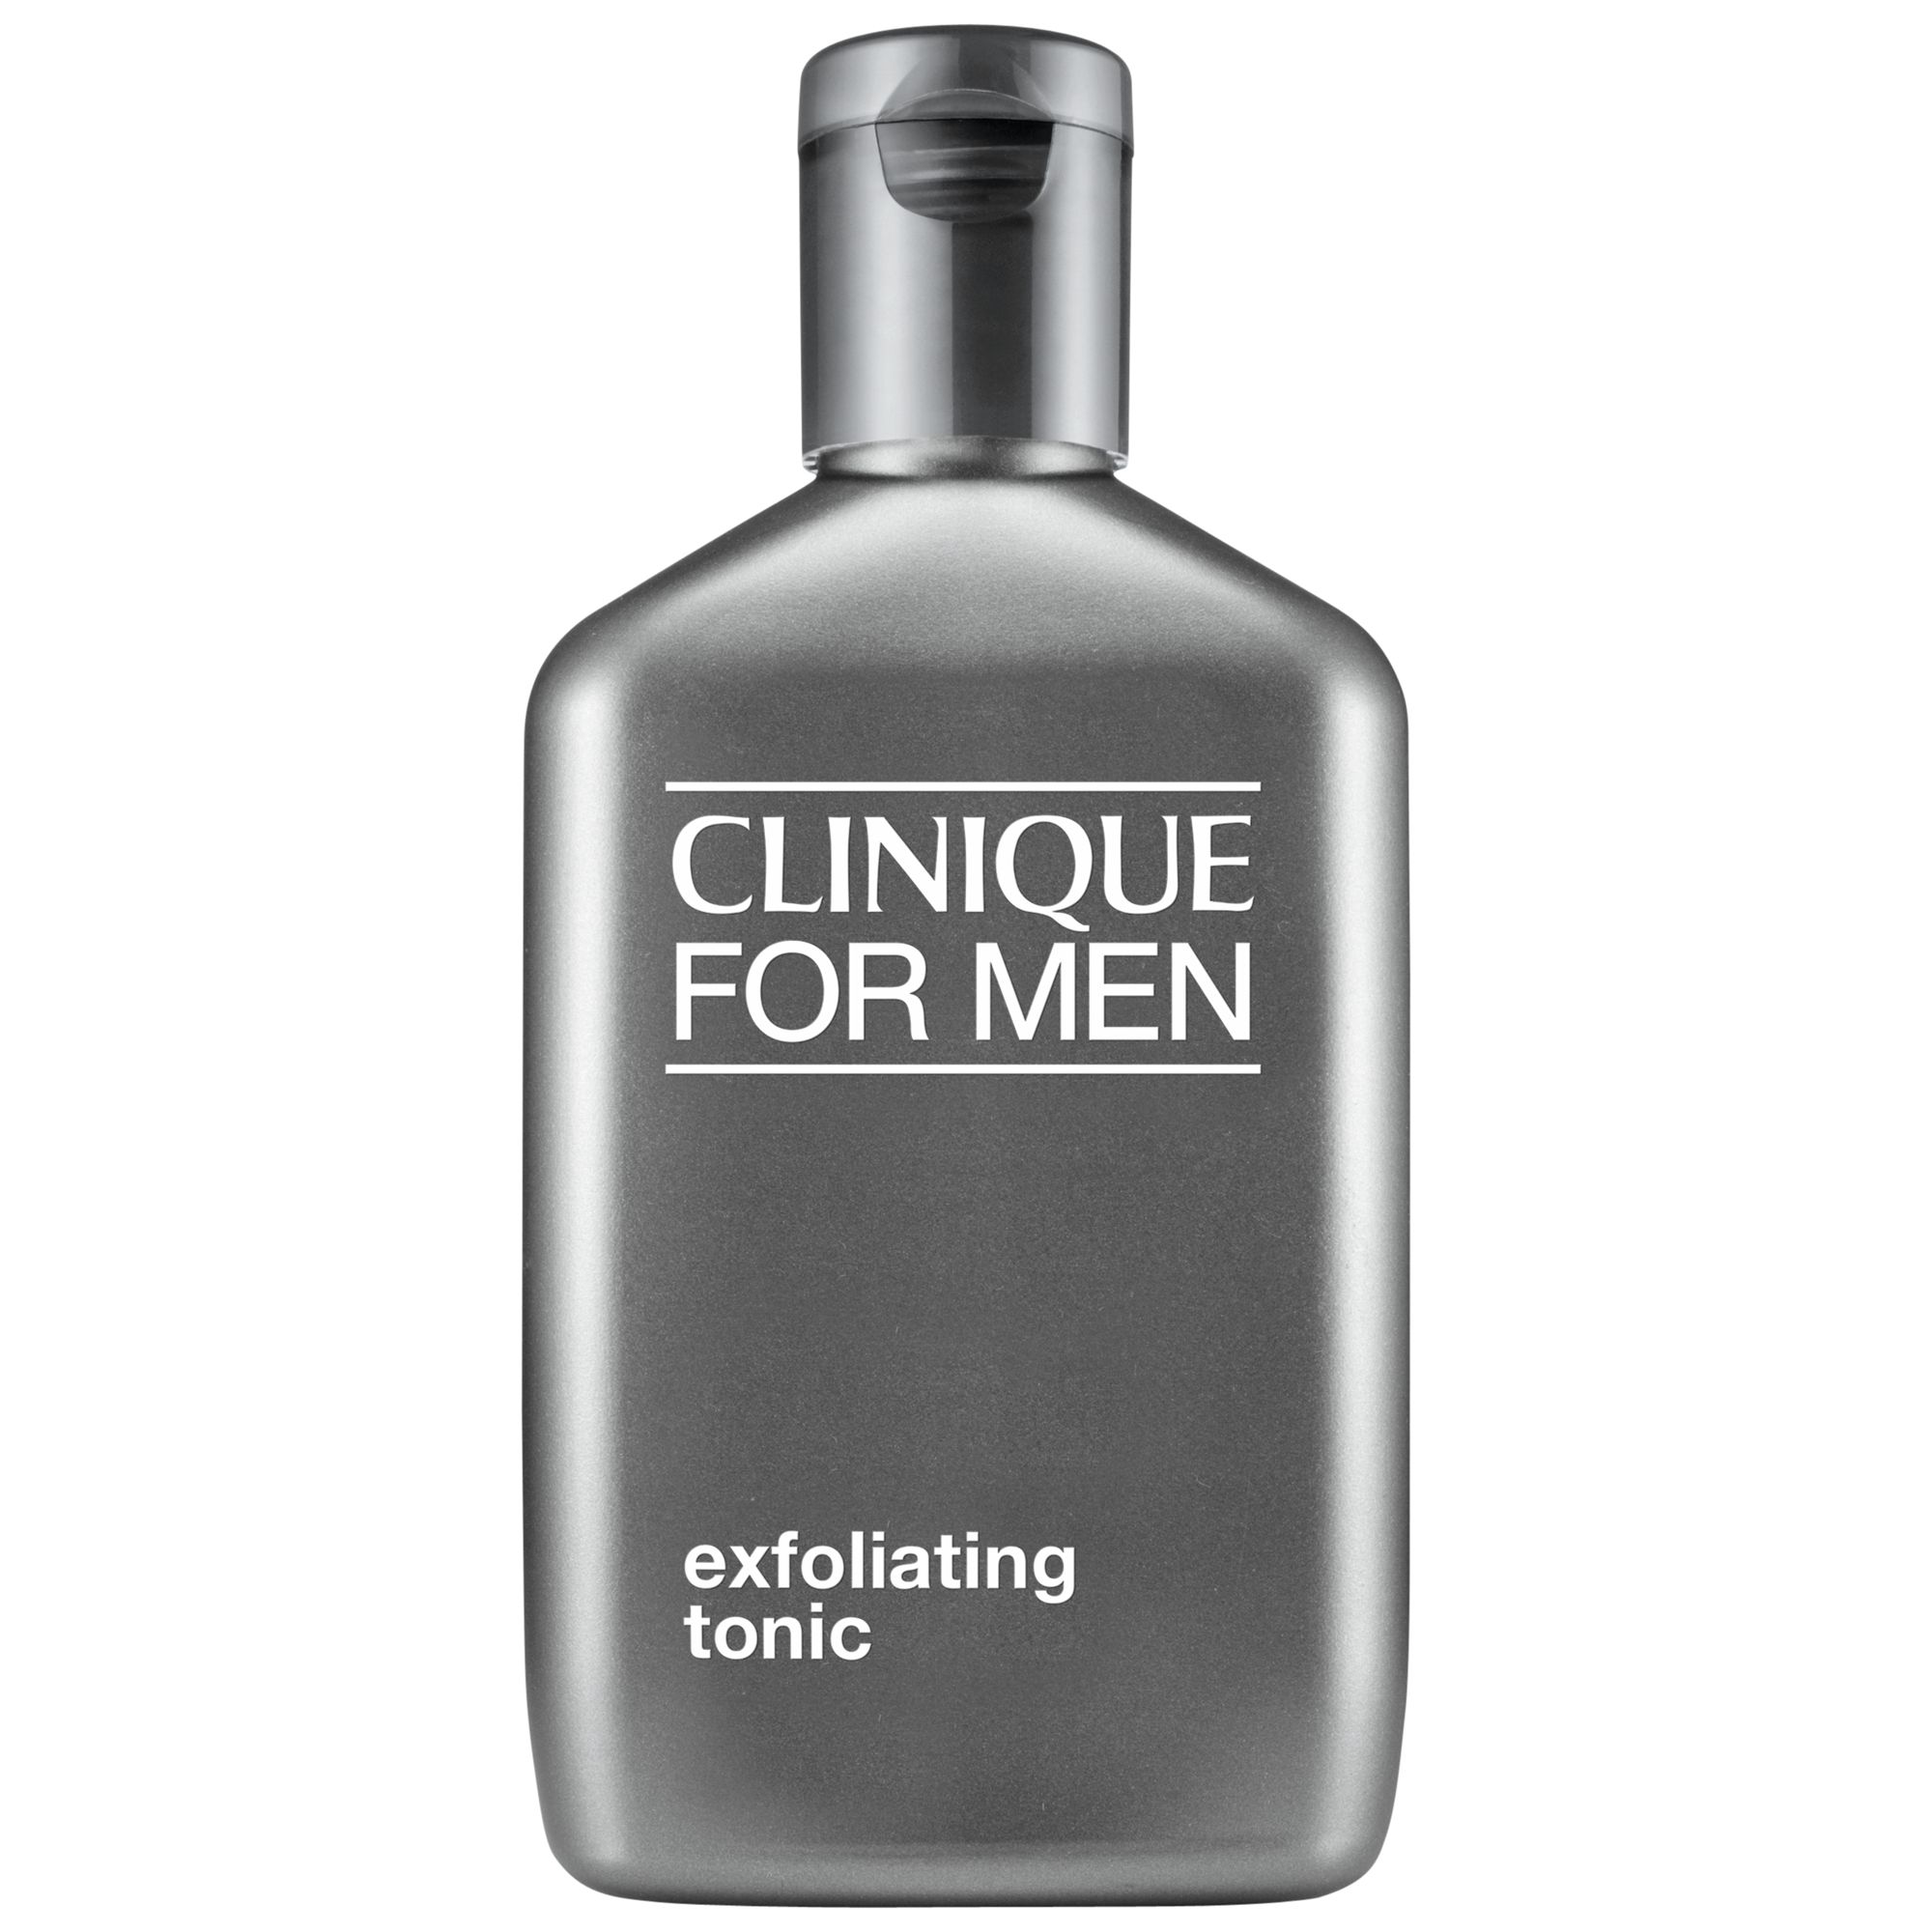 Clinique For Men Exfoliating Tonic, 200ml